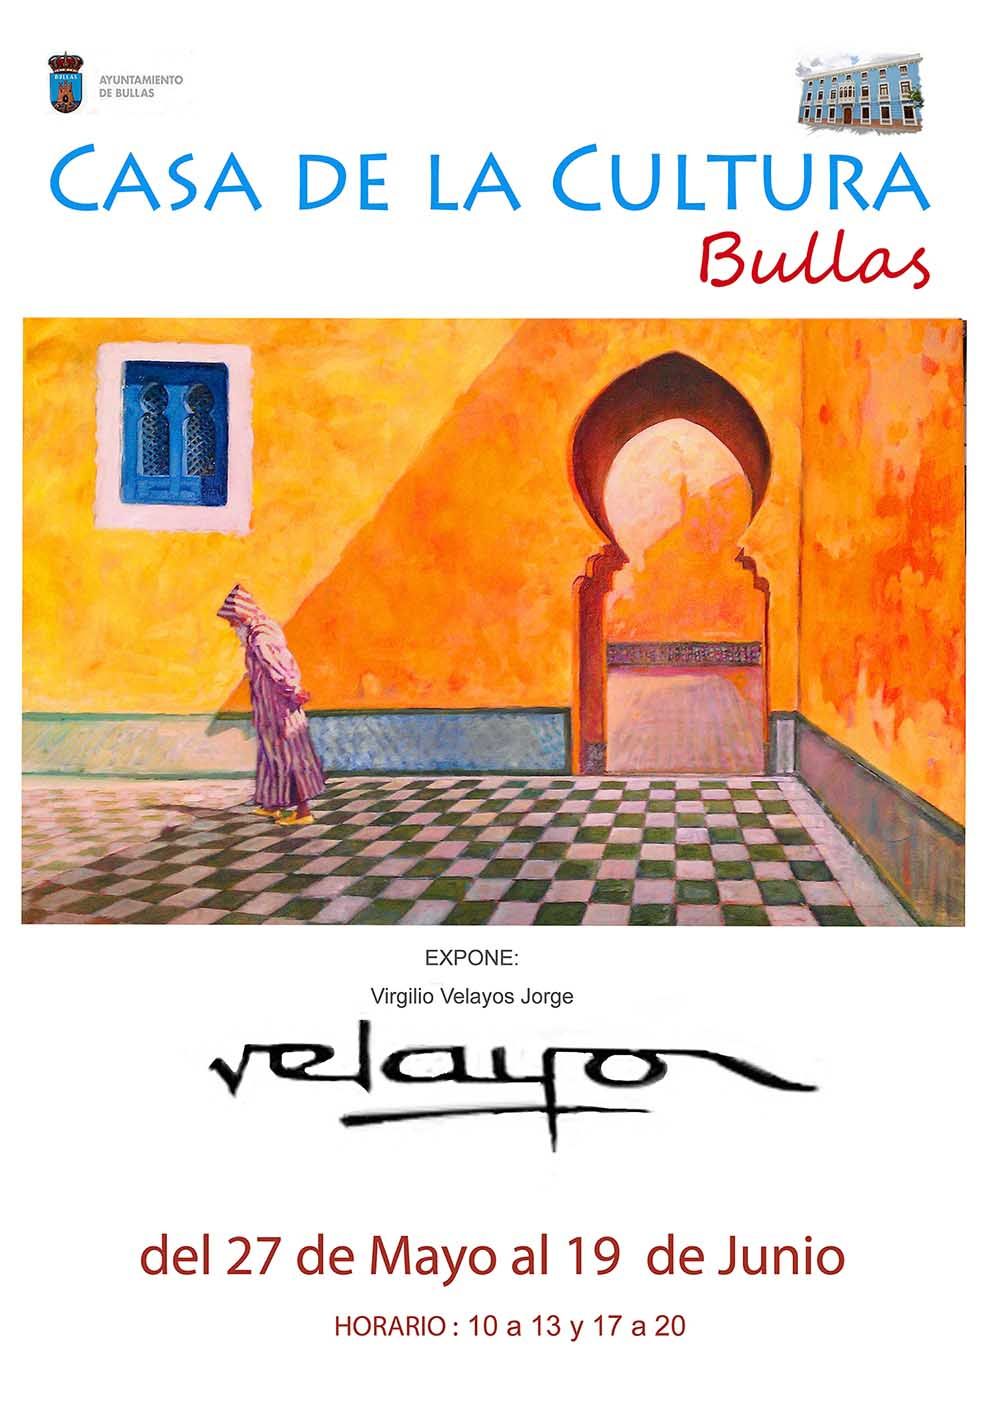 La exposición de Virgilio Velayos Jorge en la Casa de la Cultura de Bullas se inauguró el viernes 27